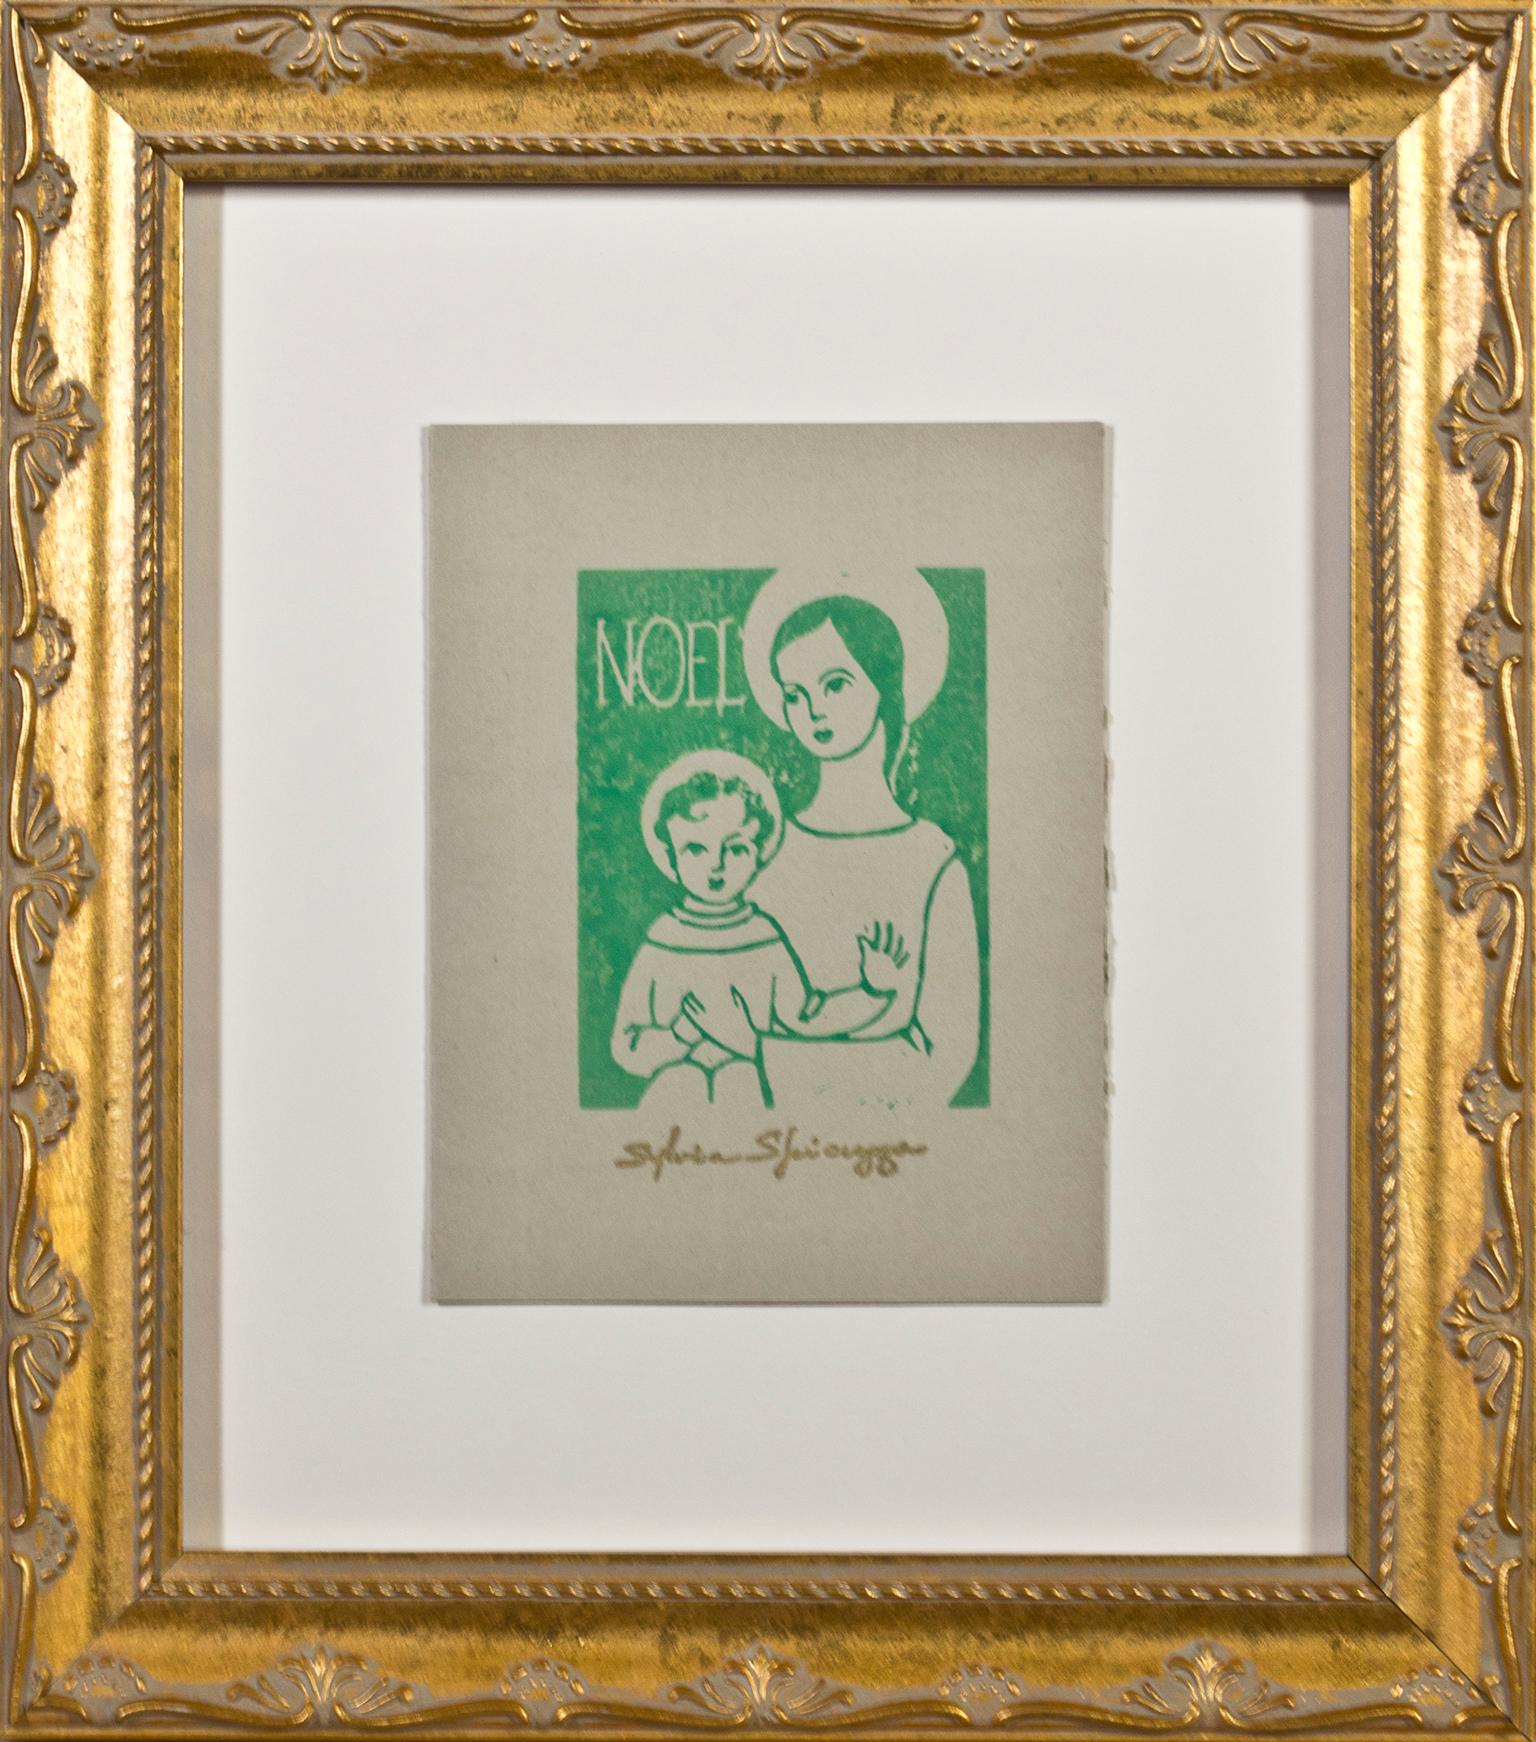 Religiöser „Noel“-Linoschliff in Grün auf braunem Papier, signiert von Sylvia Spicuzza